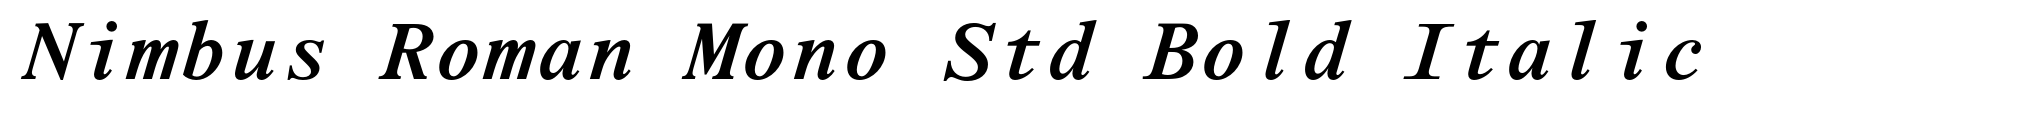 Nimbus Roman Mono Std Bold Italic image